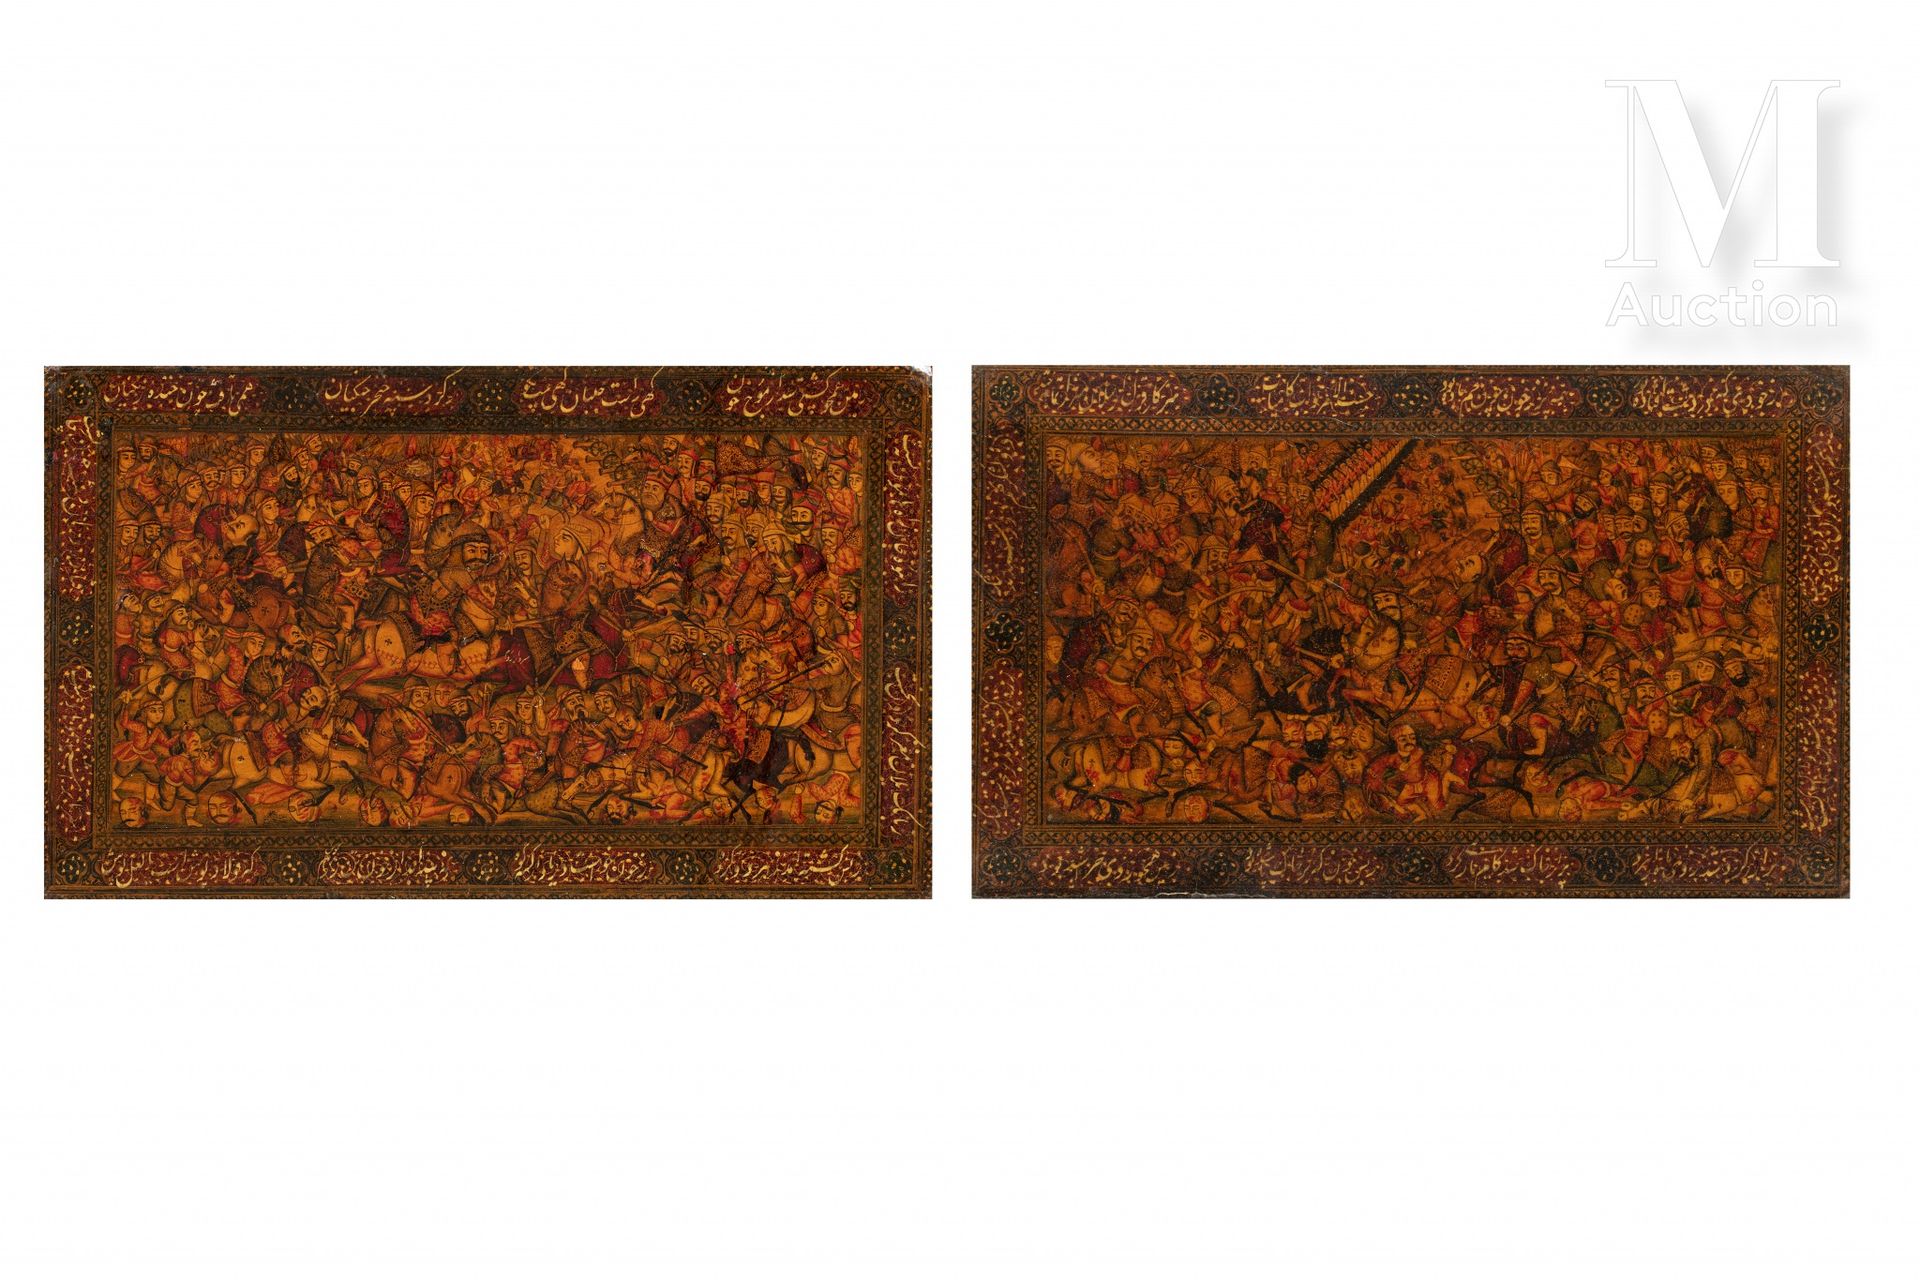 Deux plats de reliure qâjâr Irán, alrededor de 1880

Platos de papel maché lacad&hellip;